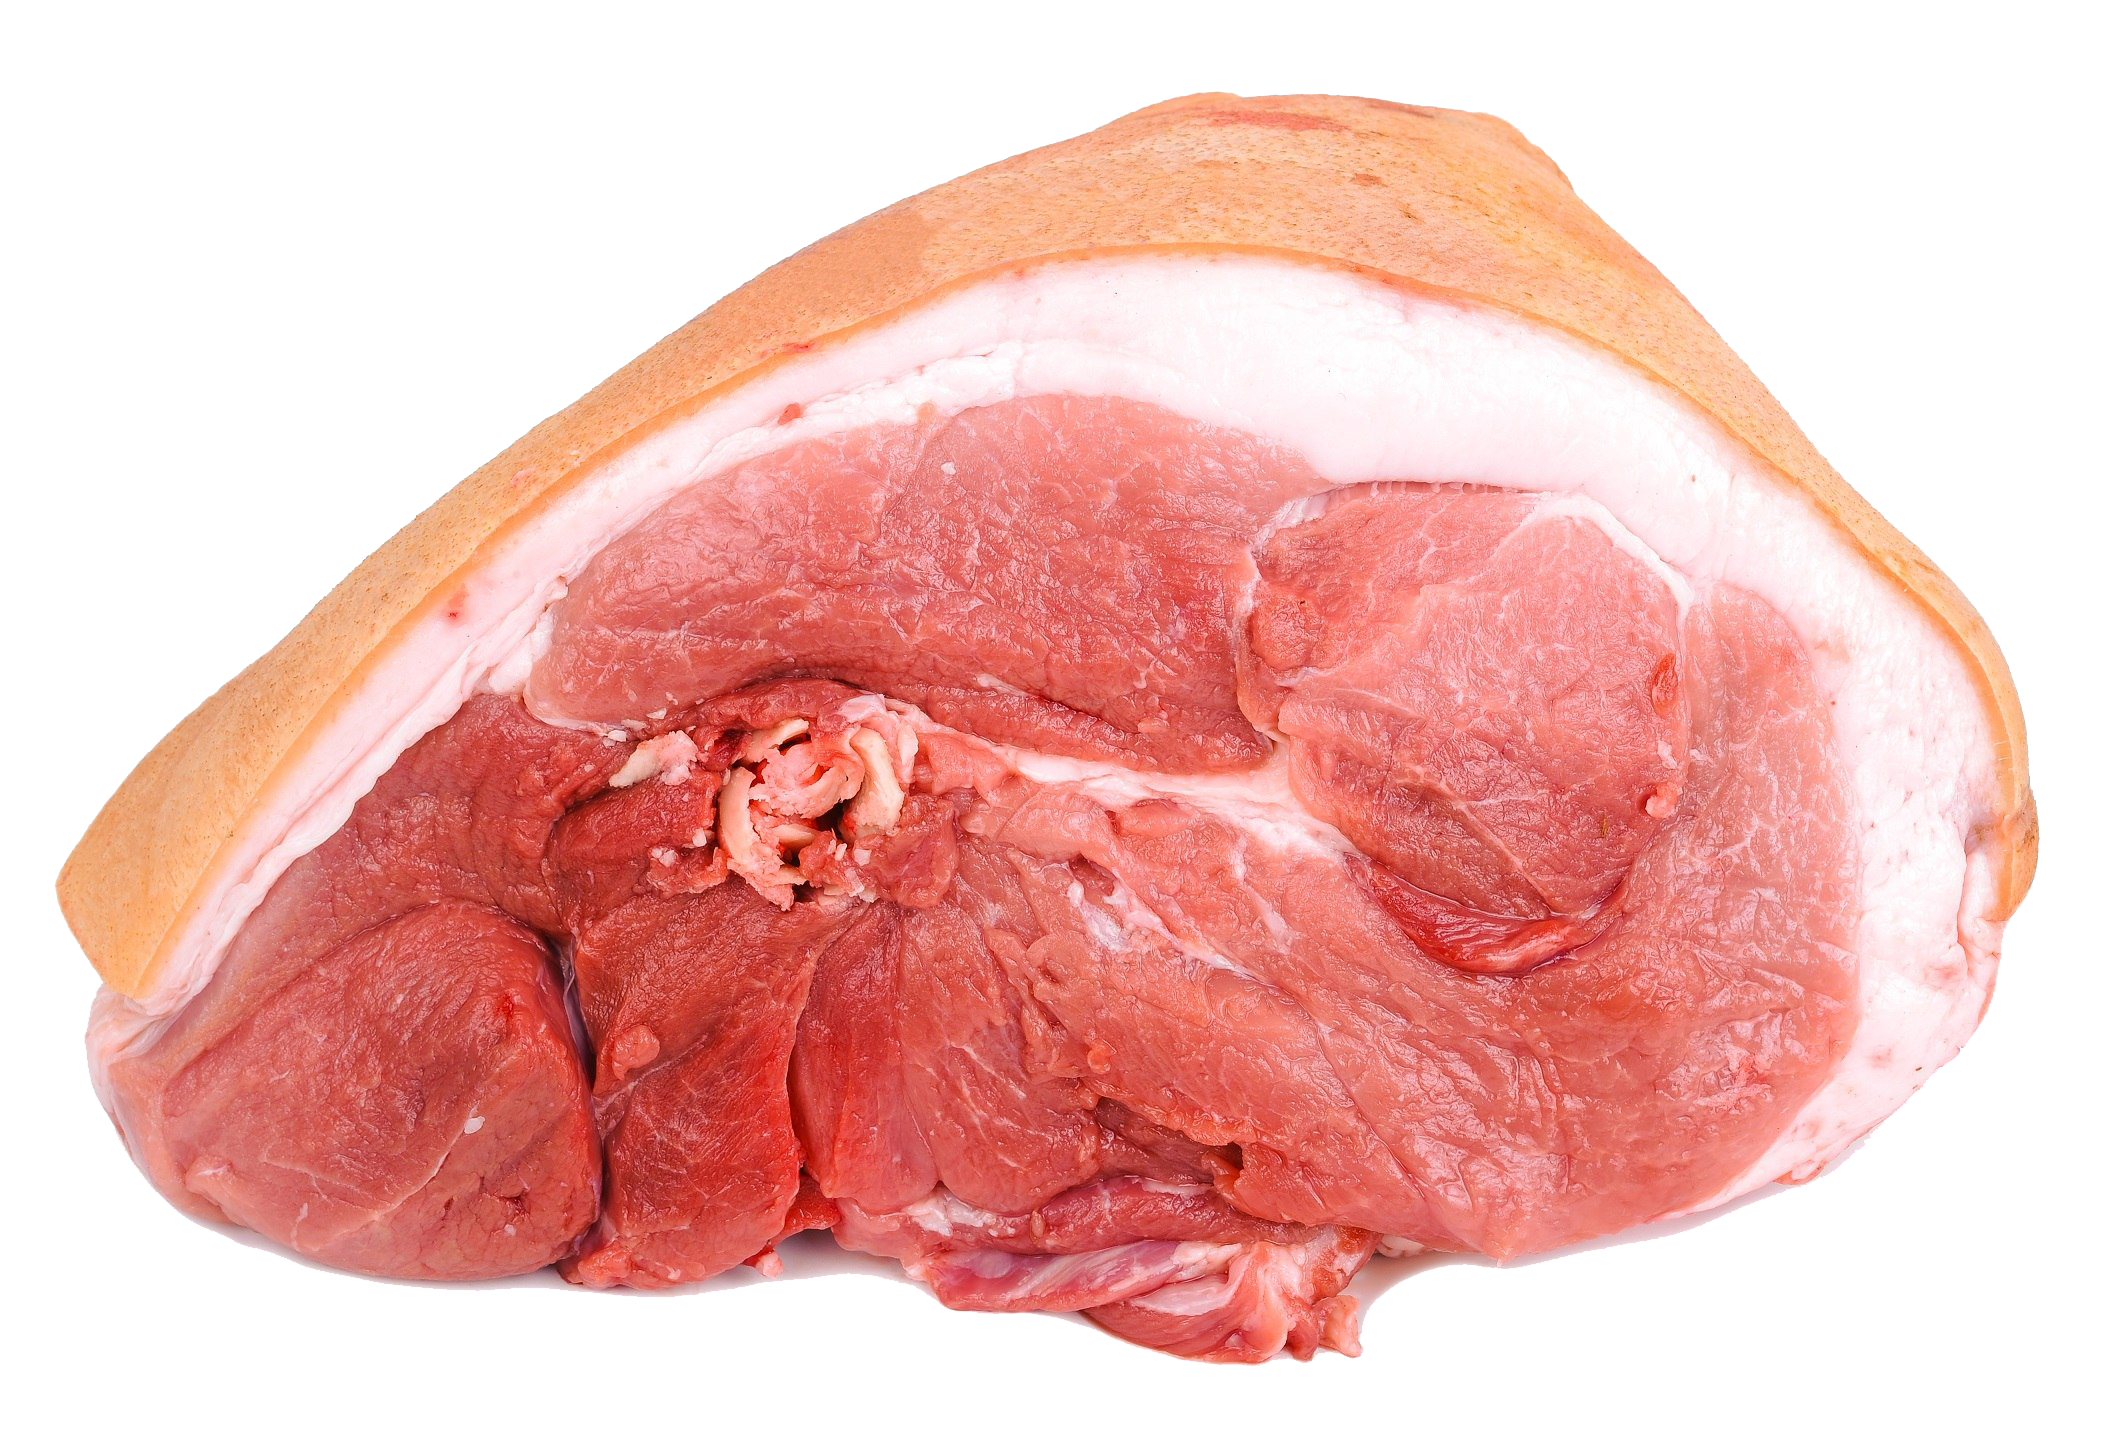 सुअर का मांस